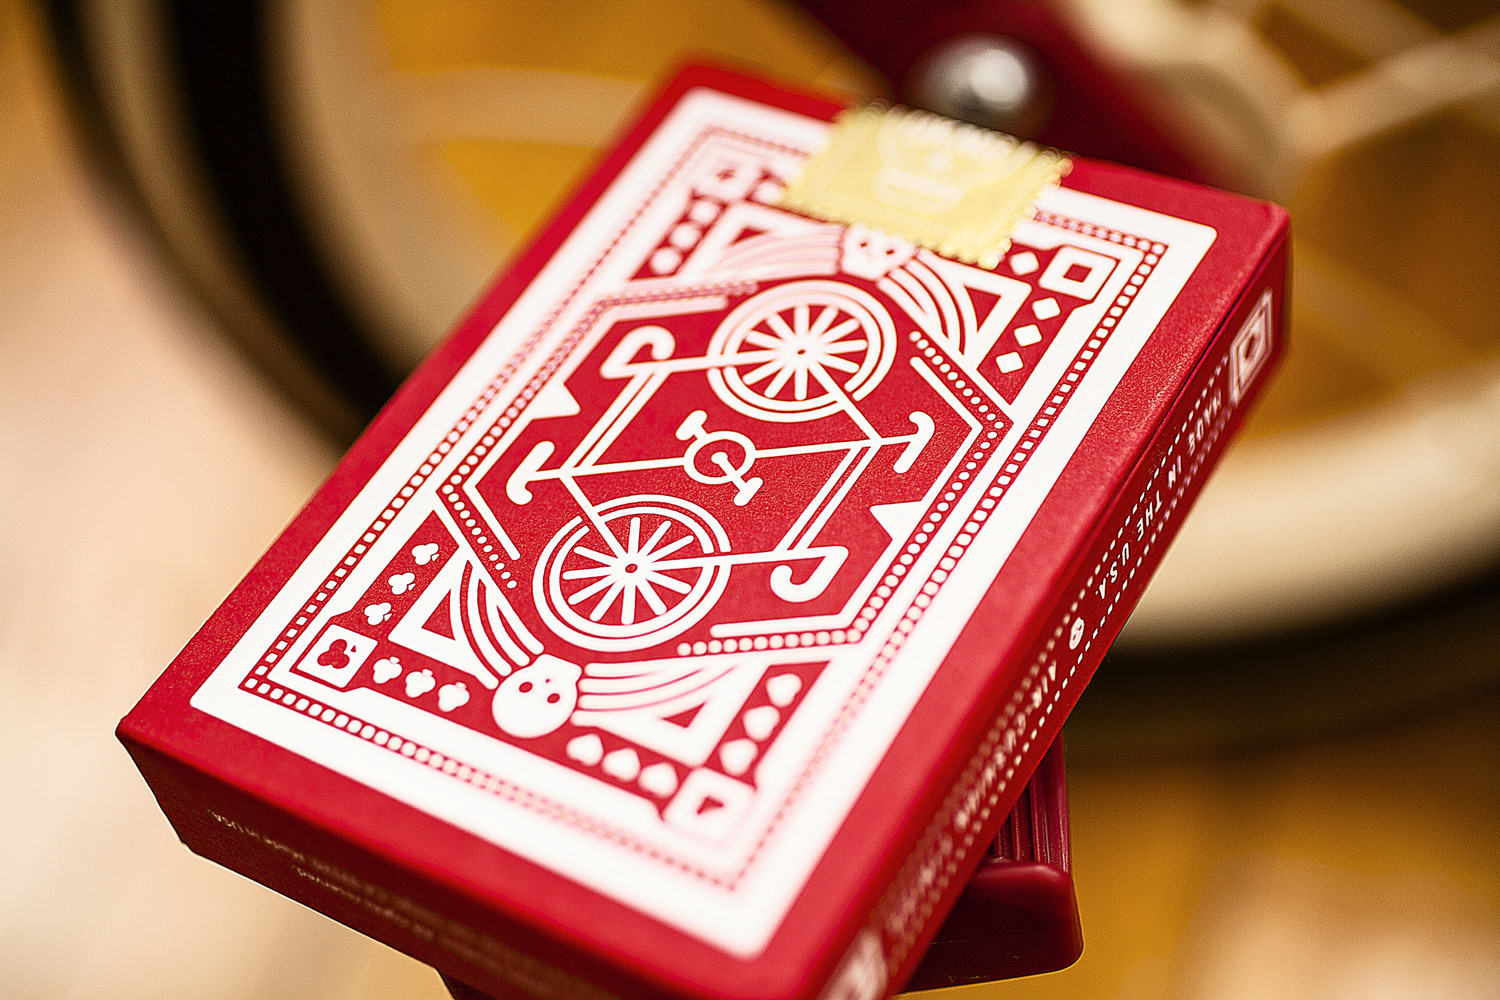 True Red Card 290gsm 12 x 12 (25pk) - GM Crafts